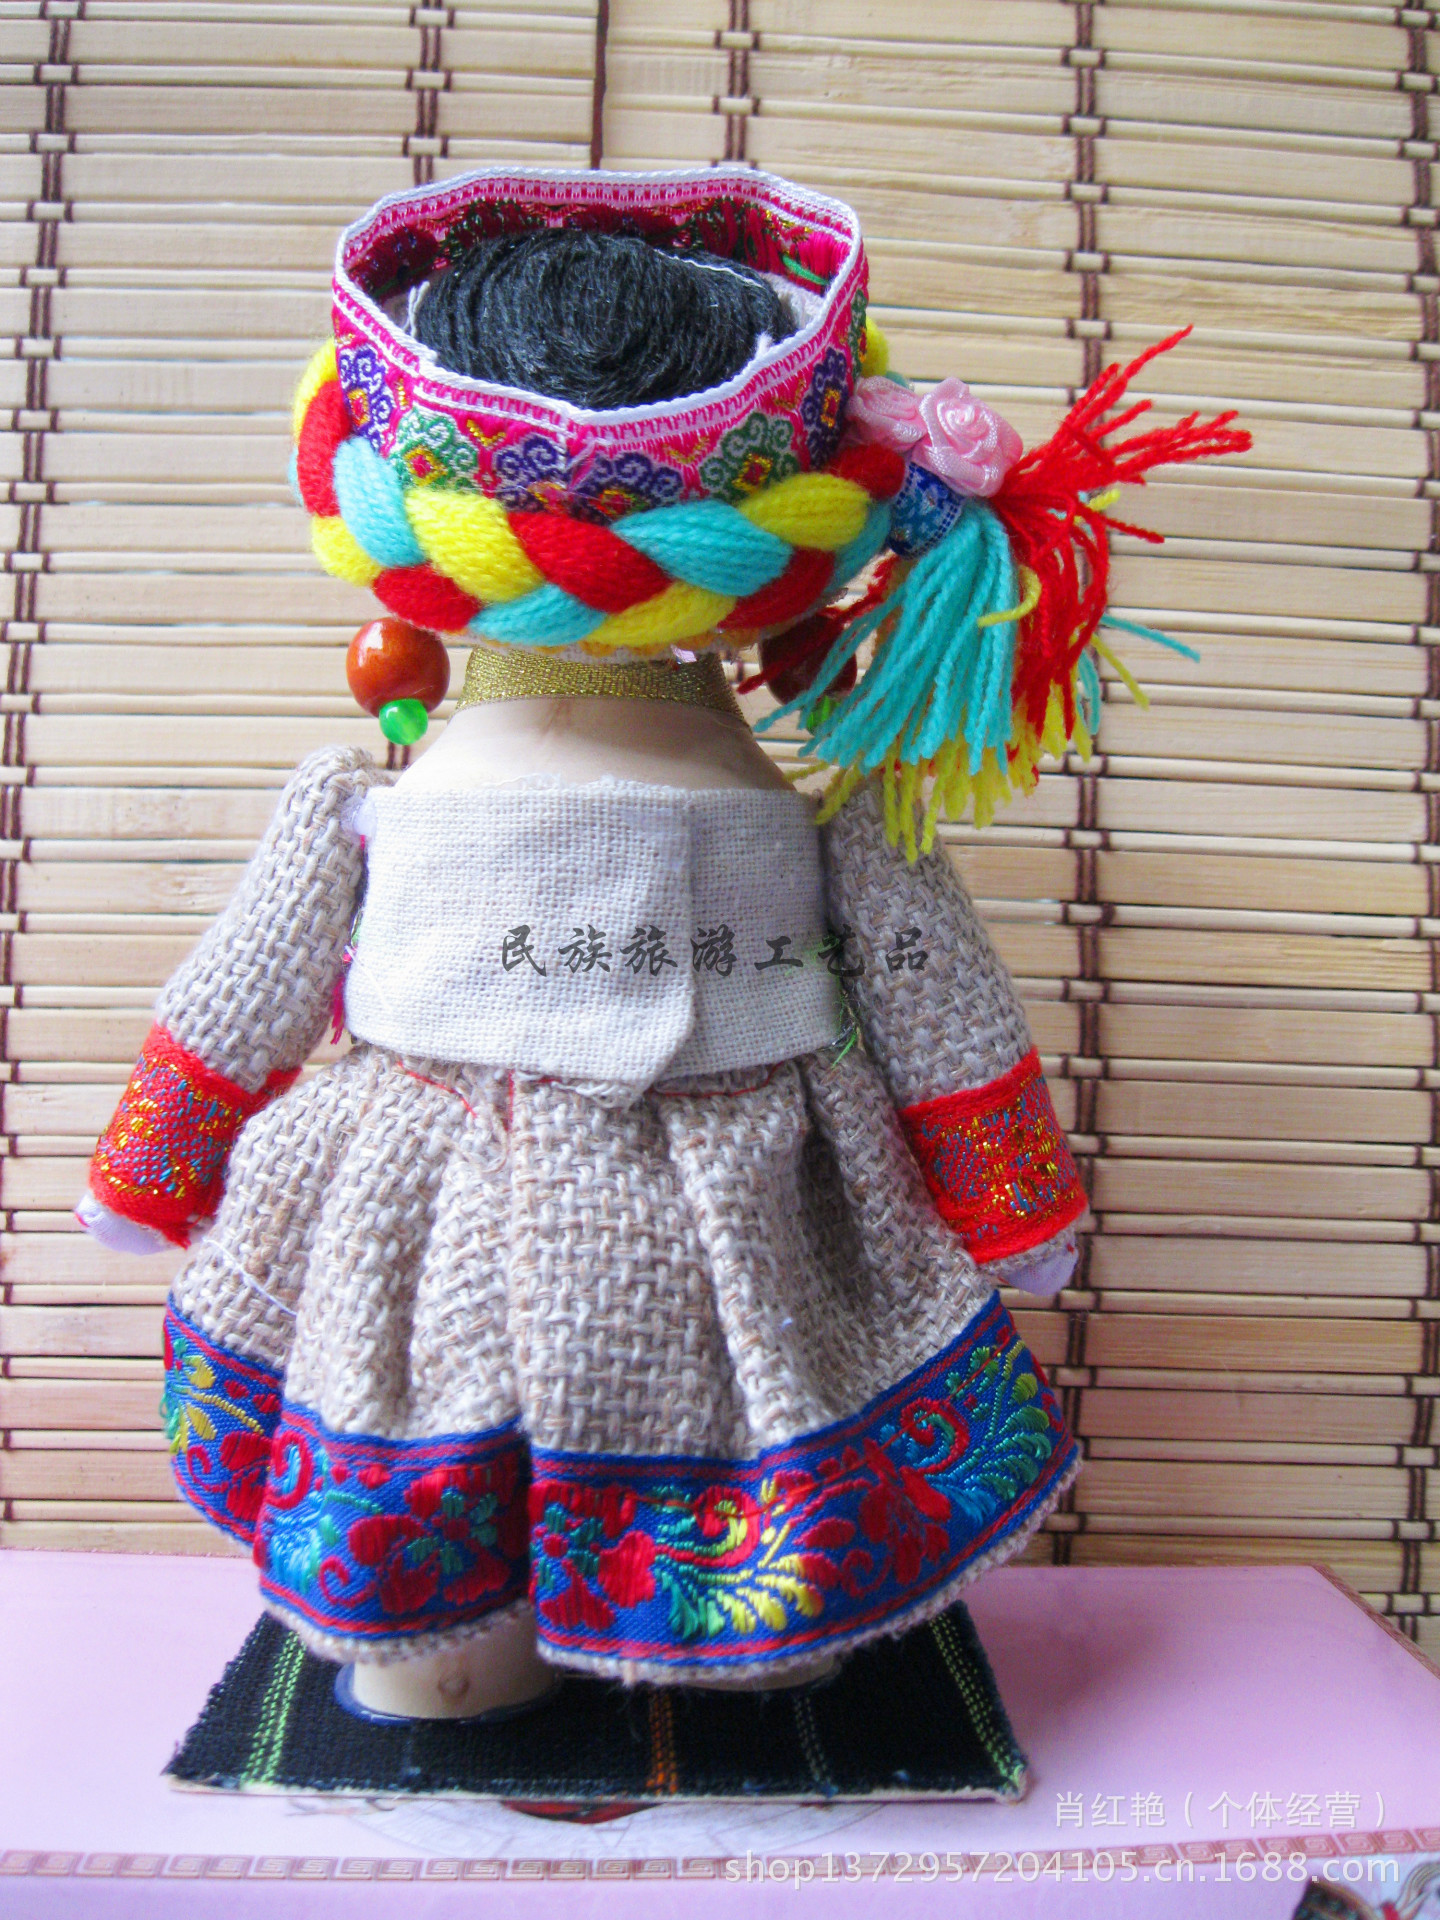 工艺品中的精品娃娃,也是最受欢迎的一款,规格分大,小俩款,全手工制作